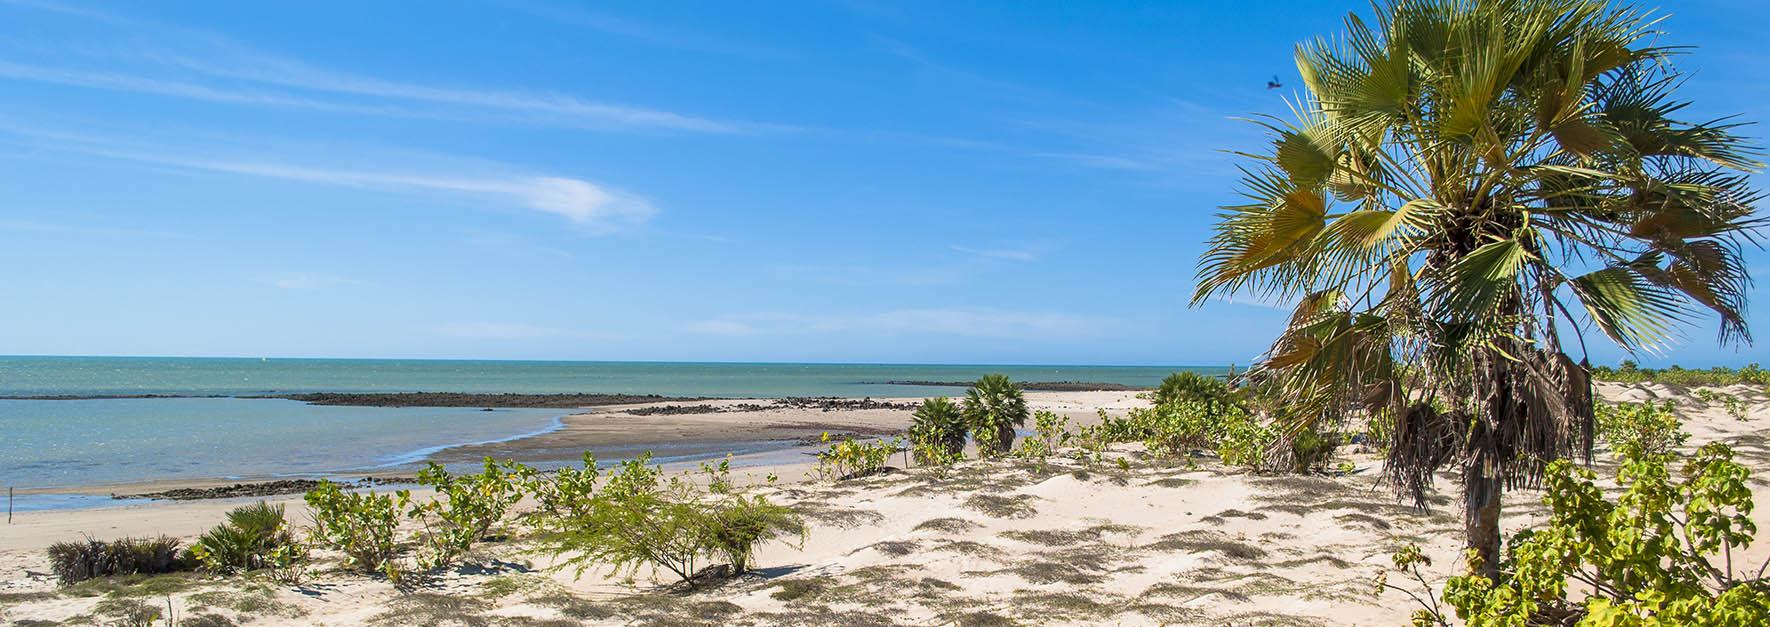 LUIS CORREIA - praias calmas e lençóis com dunas claras que permeiam o calmo atlântico